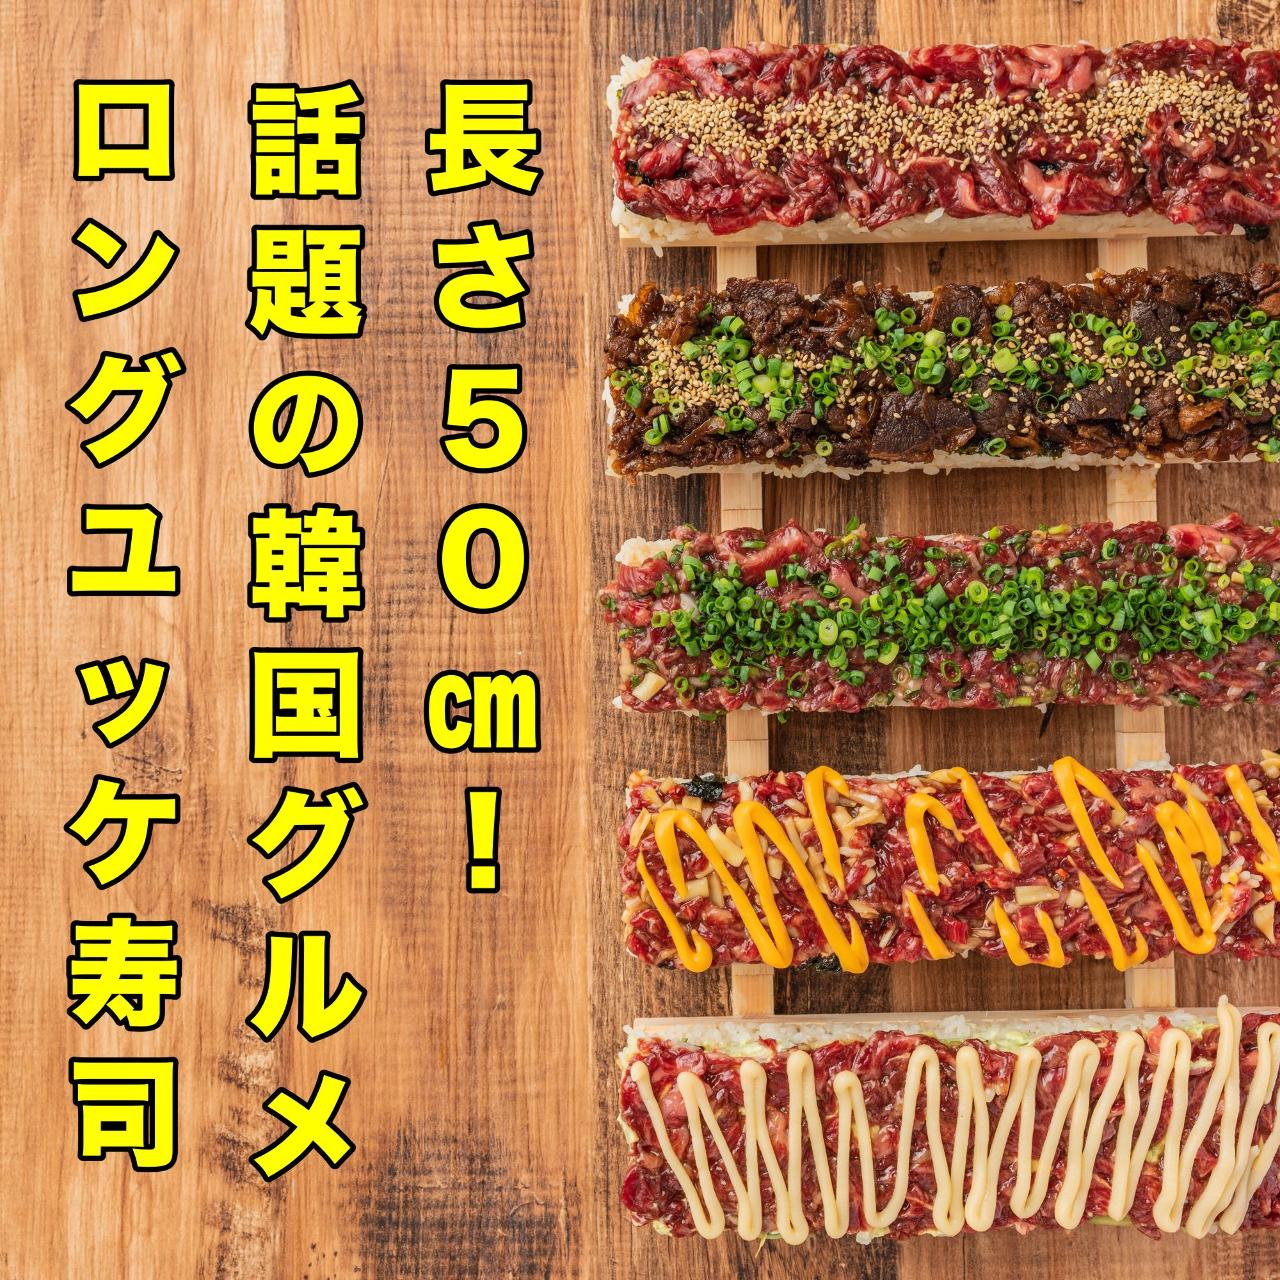 シュラスコ 肉寿司 食べ放題 肉バル個室居酒屋 カナタ 渋谷店の画像2